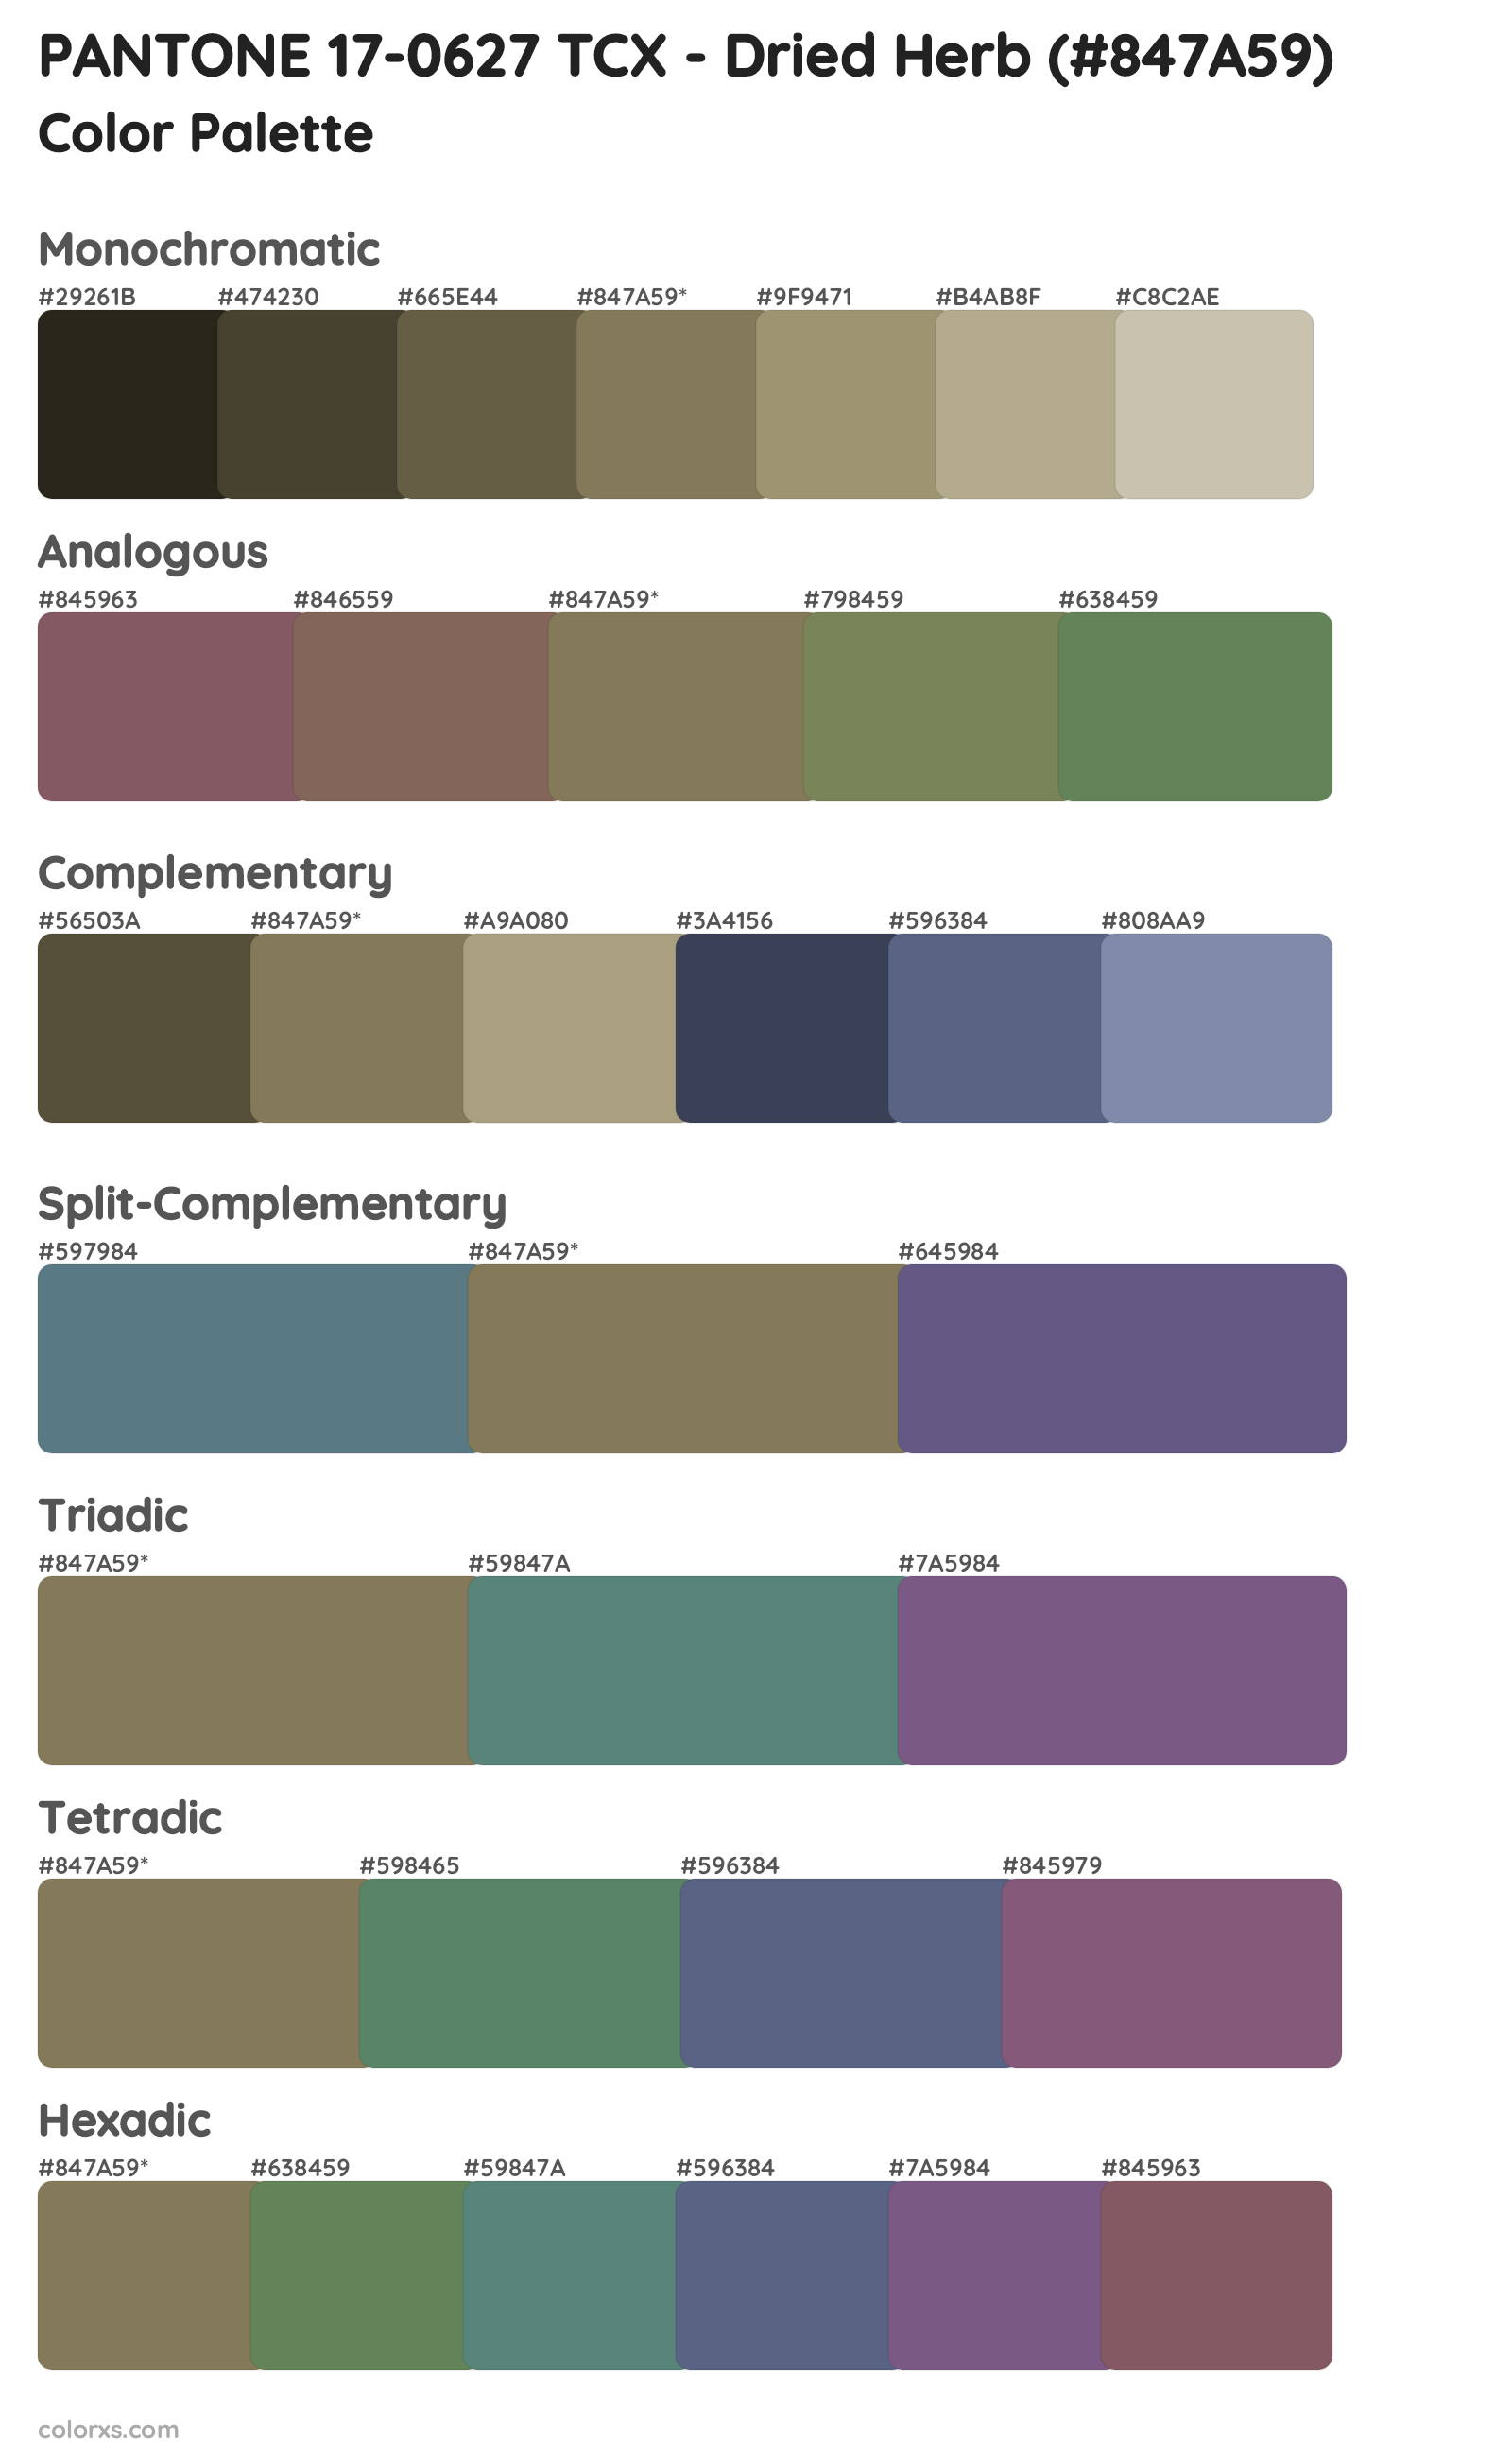 PANTONE 17-0627 TCX - Dried Herb Color Scheme Palettes